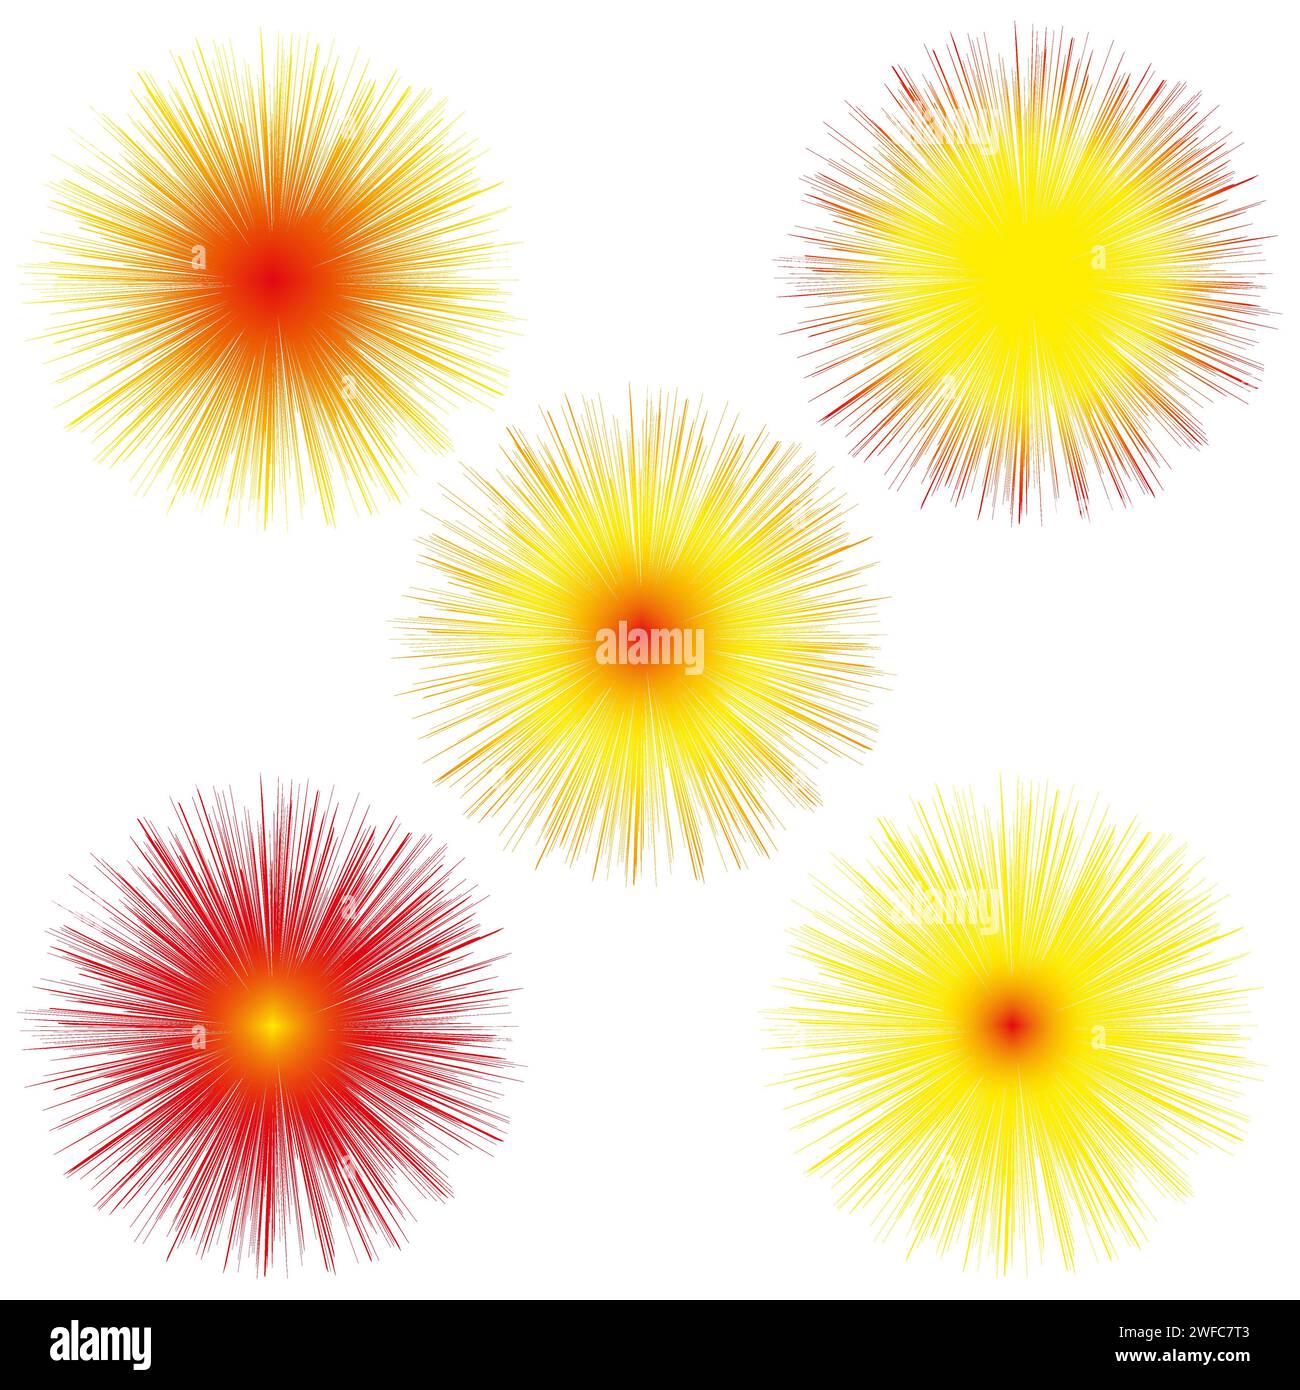 sun balloon fluffy. Cartoon style. Vector illustration. stock image. EPS 10. Stock Vector